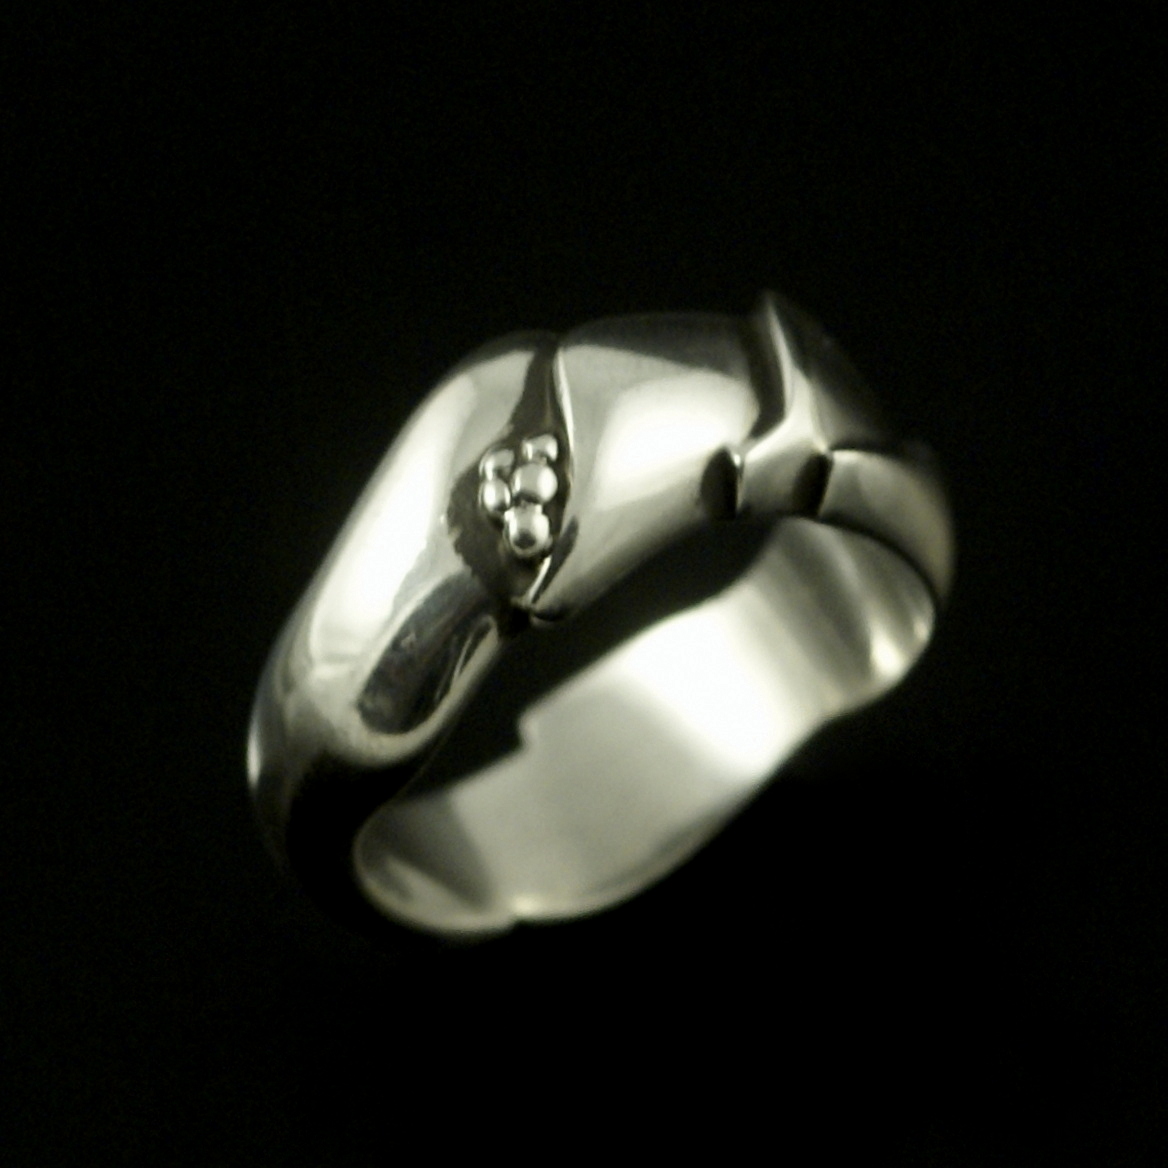 Ole Kortzau Georg Jensen Georg Jensen 53mm Sterling Silver Ring #240A 